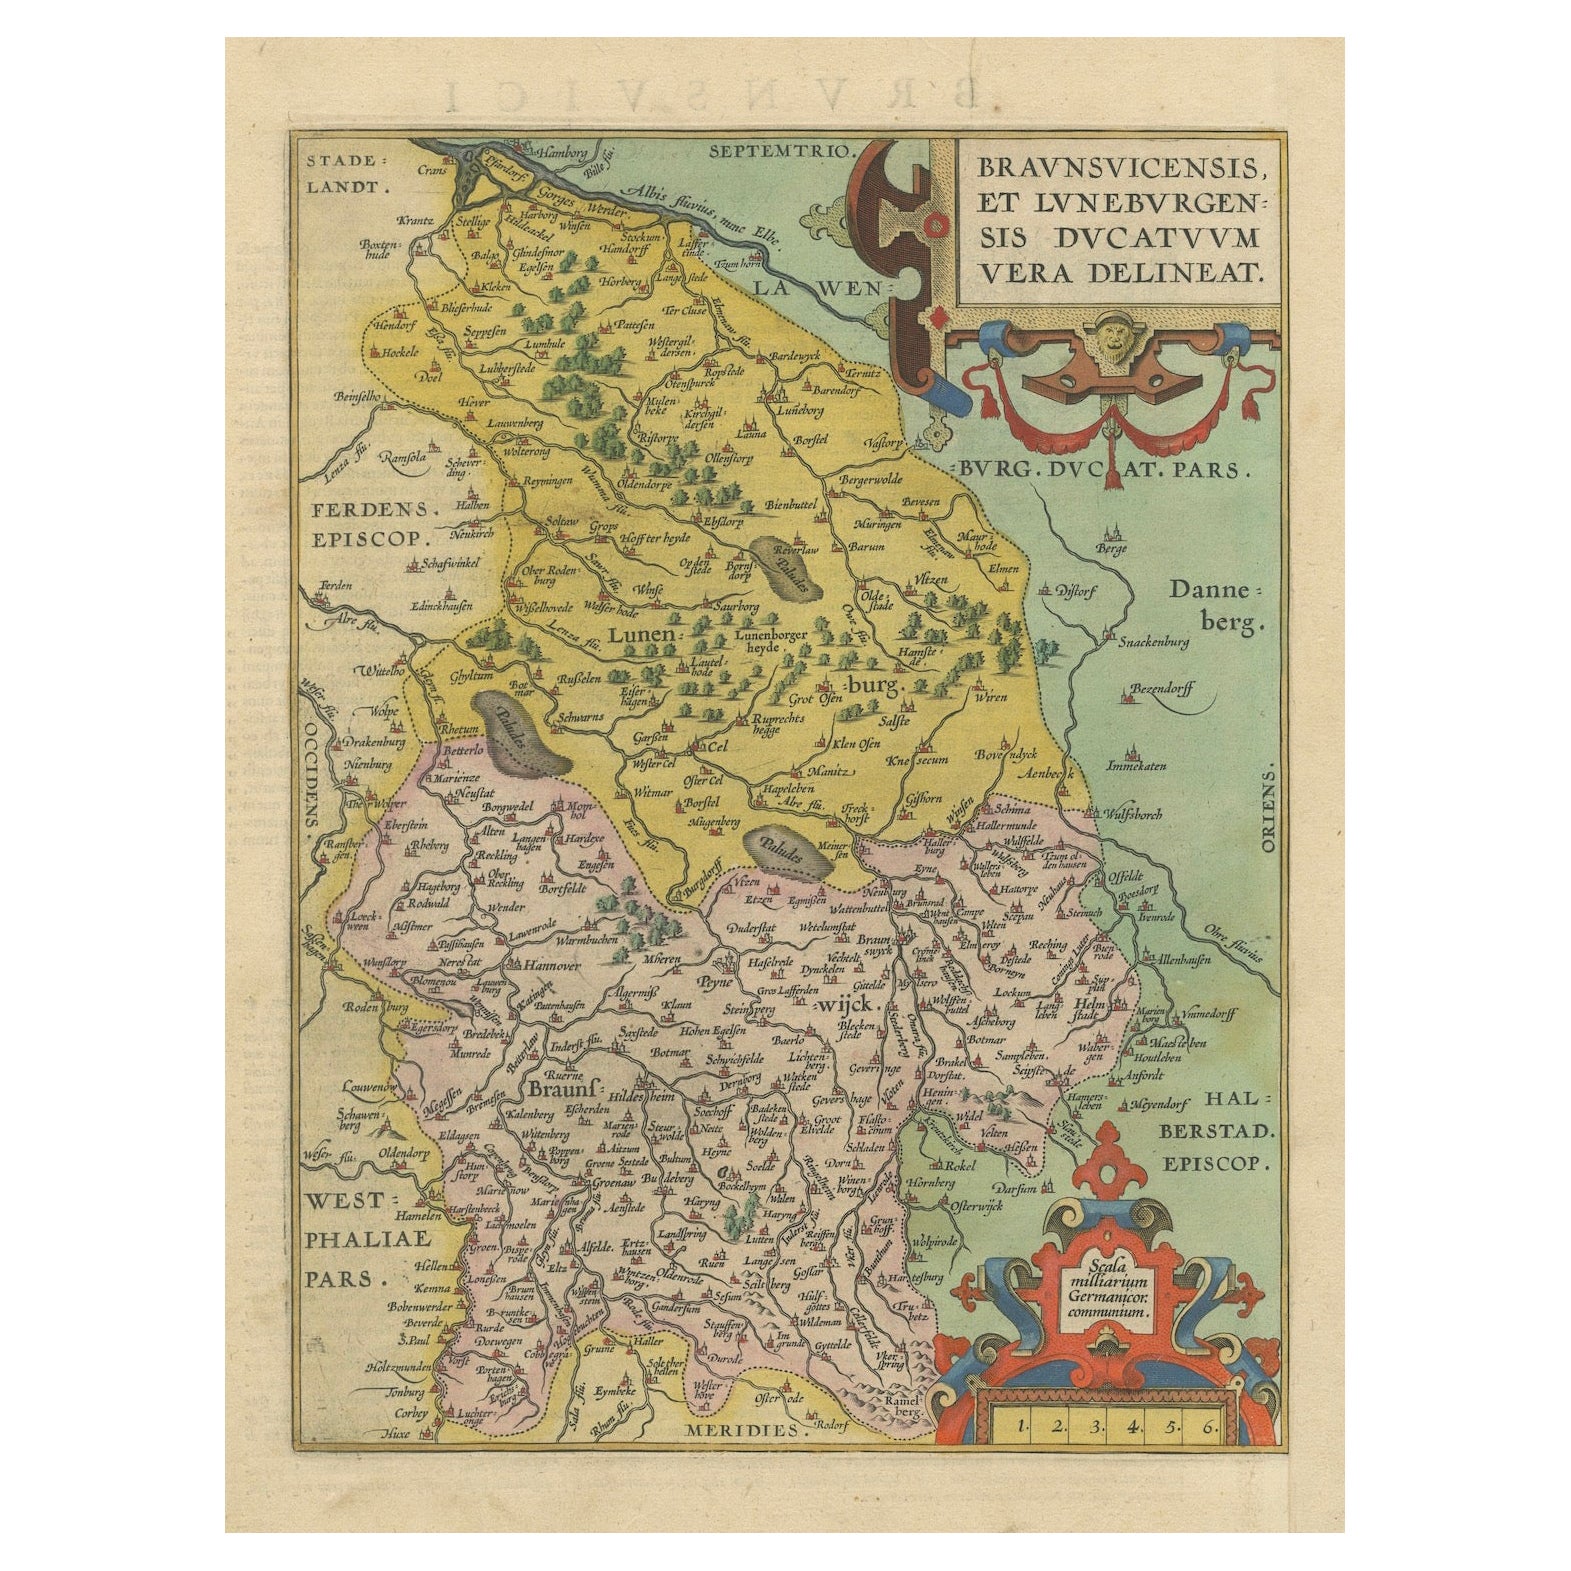 Duché de Brunswick-Lüneburg, 1595 : Un chef-d'œuvre cartographique de la Renaissance en vente